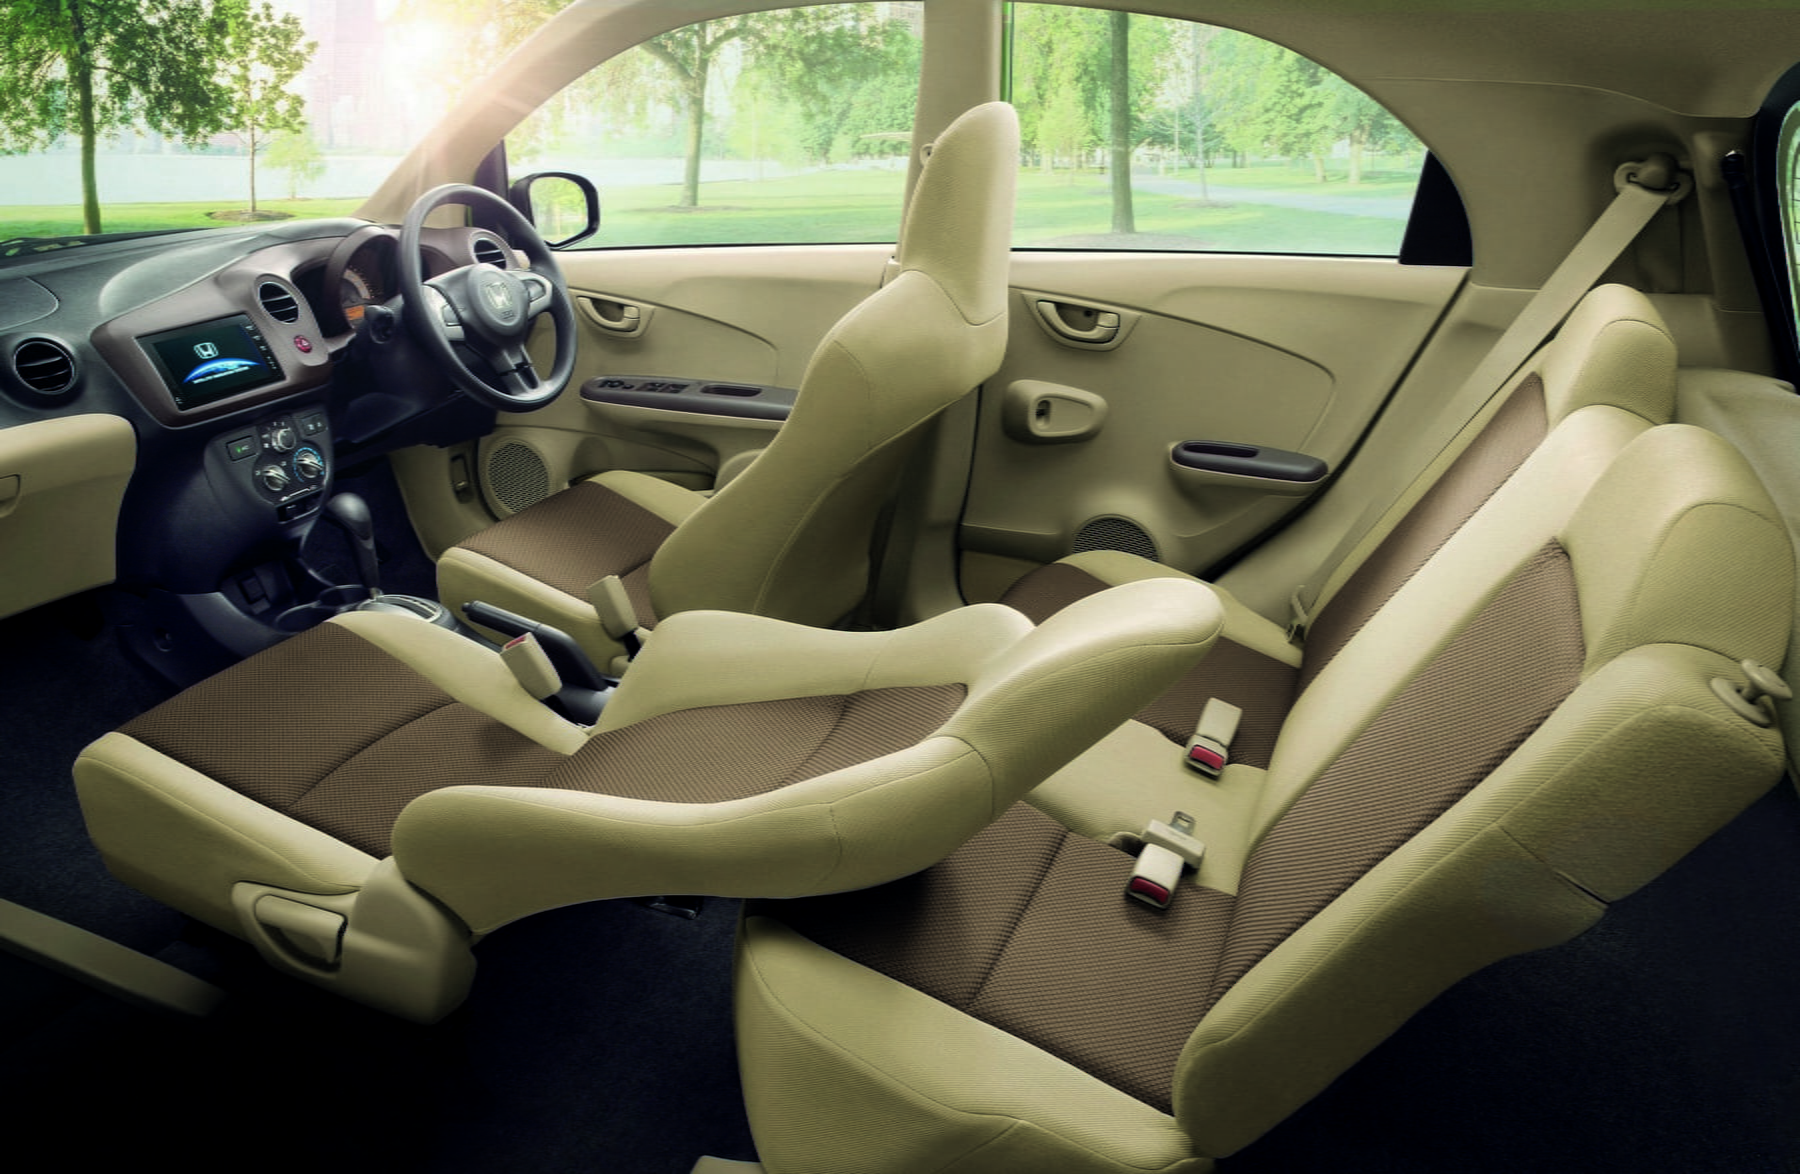 Hình nội thất sang trọng của xe ảnh xe Honda Brio 15